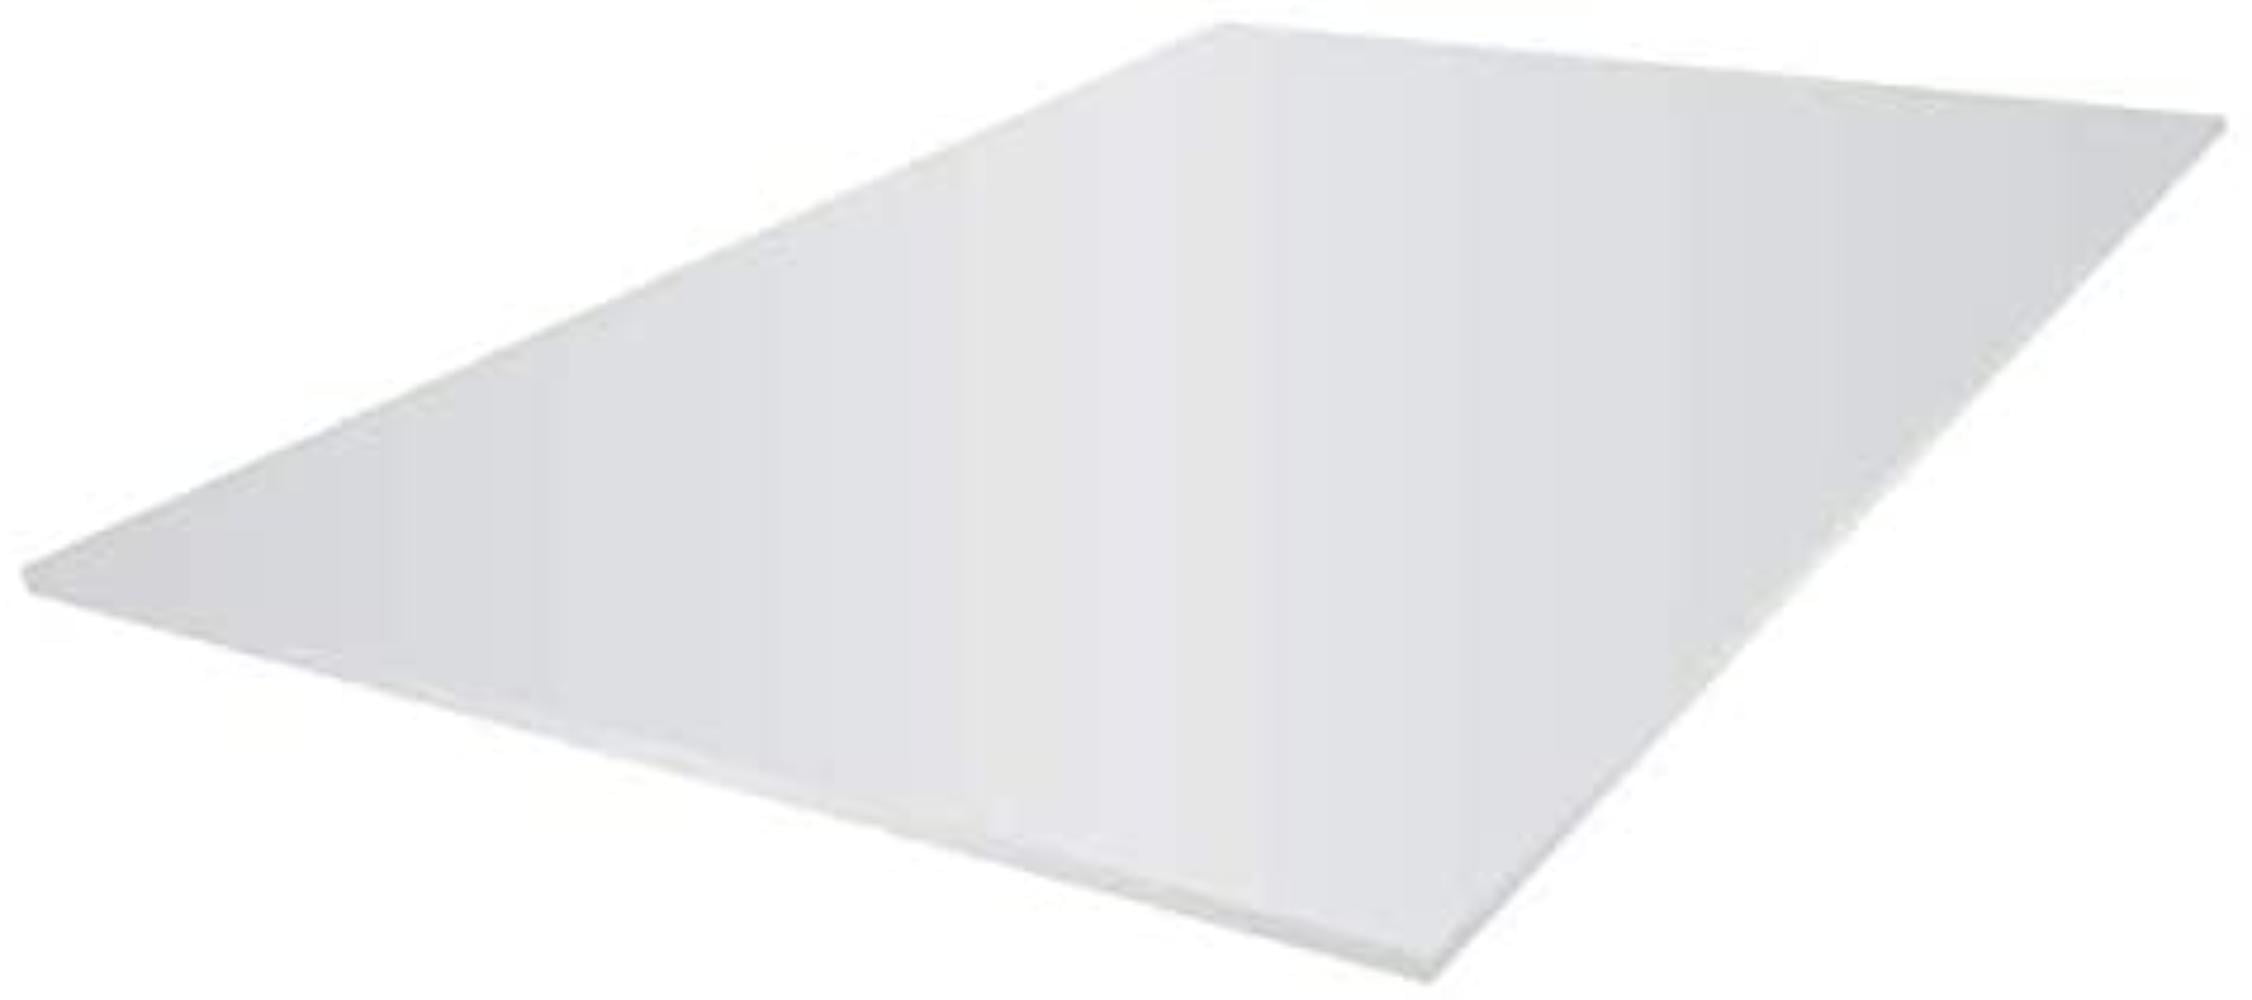 Sturdy Board(R) Foam Boards, 30in. x 40in, White, Pack of 